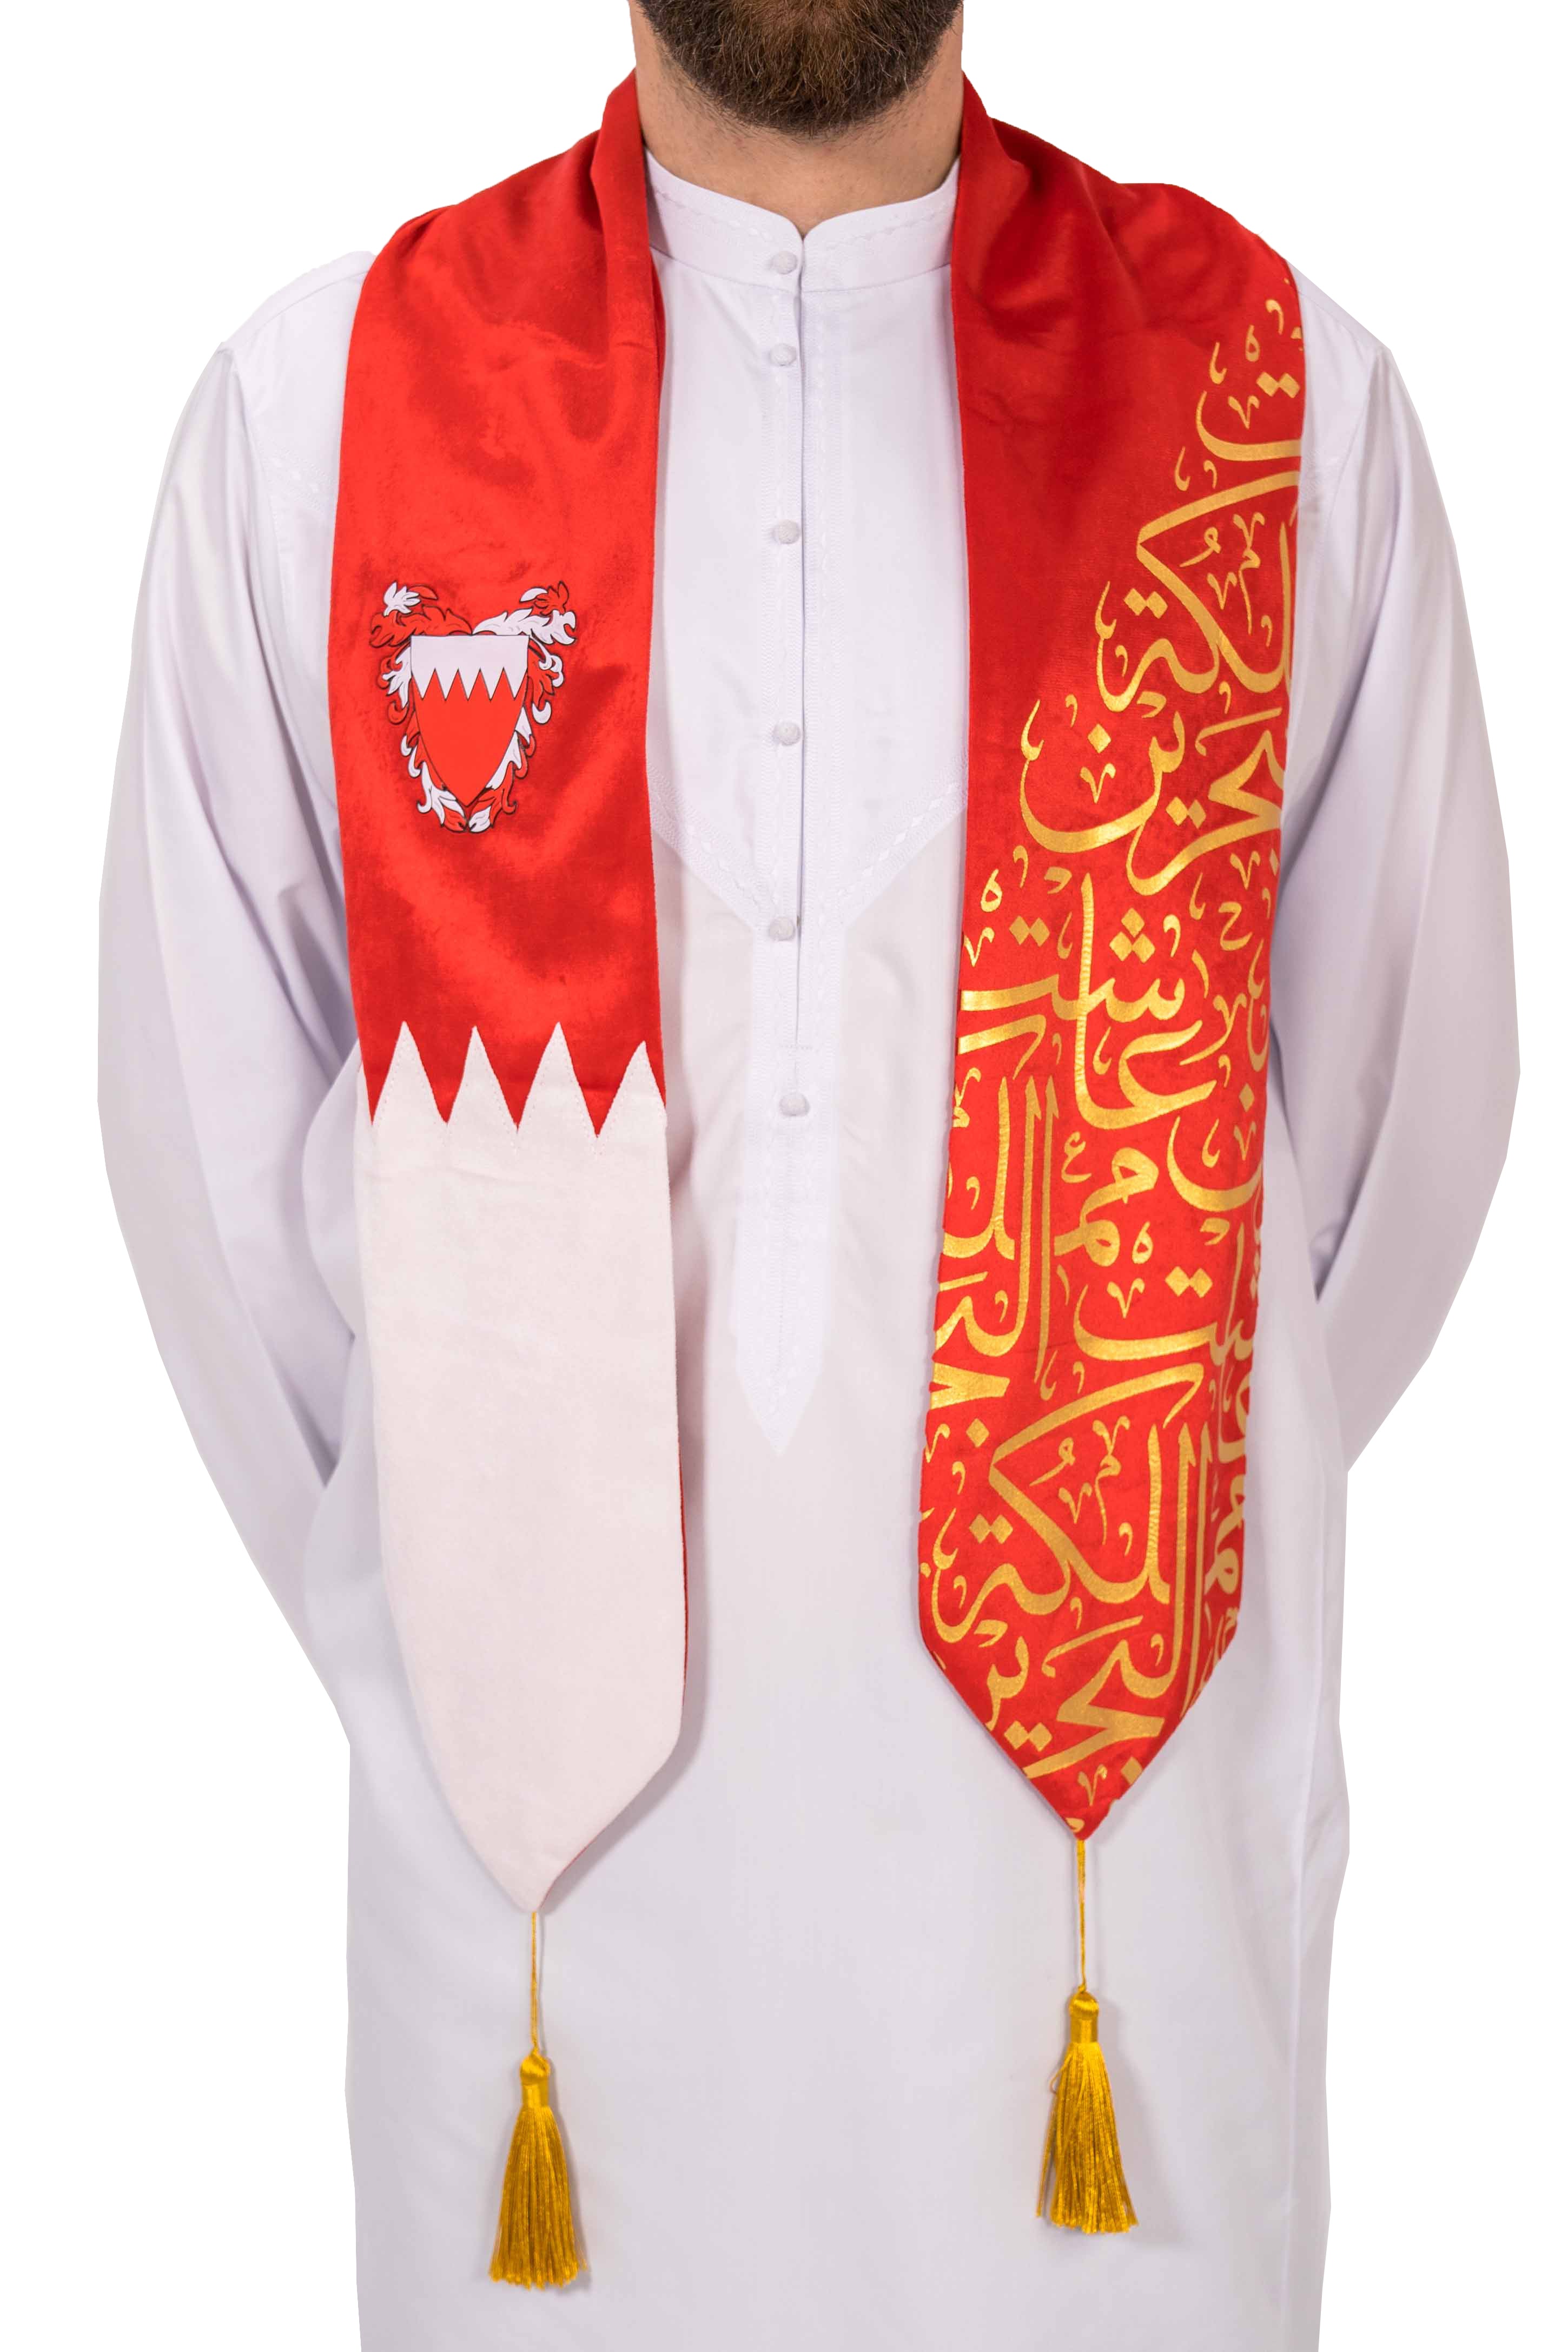 وشاح روفاتي البحرين اليوم الوطني 2021 أحمر